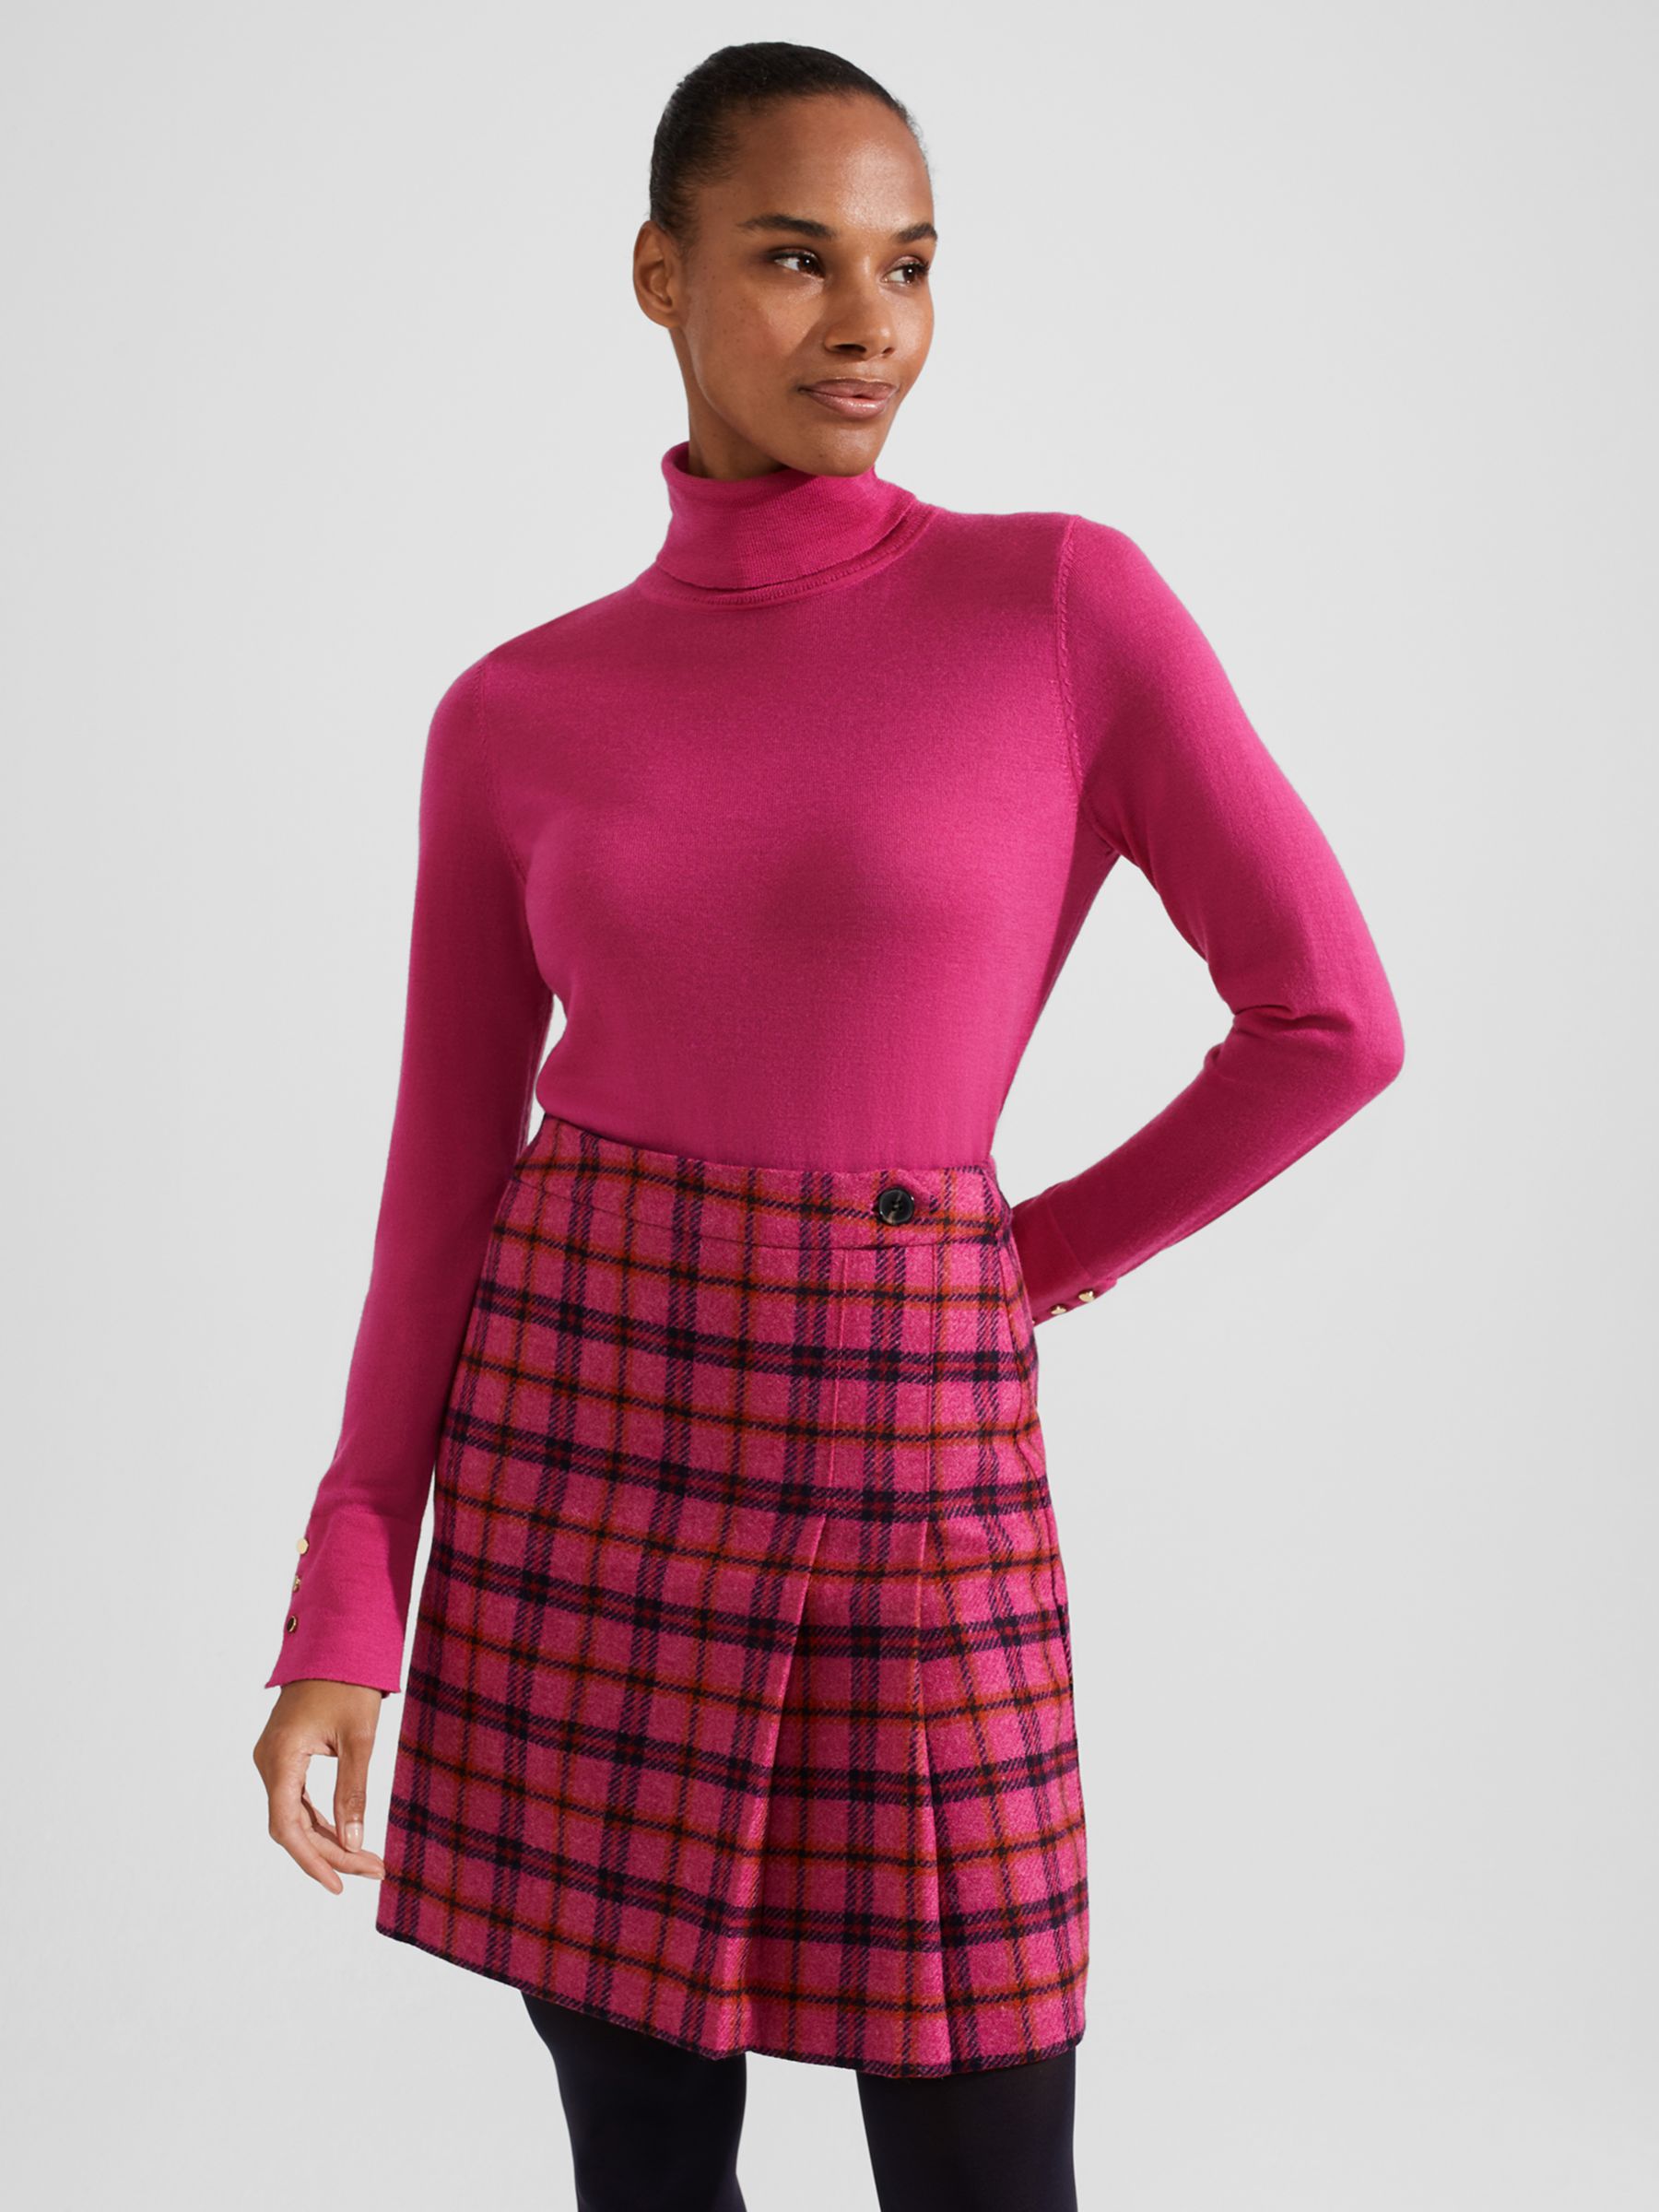 Hobbs Leah Check Wool Mini Skirt, Pink/Multi at John Lewis & Partners